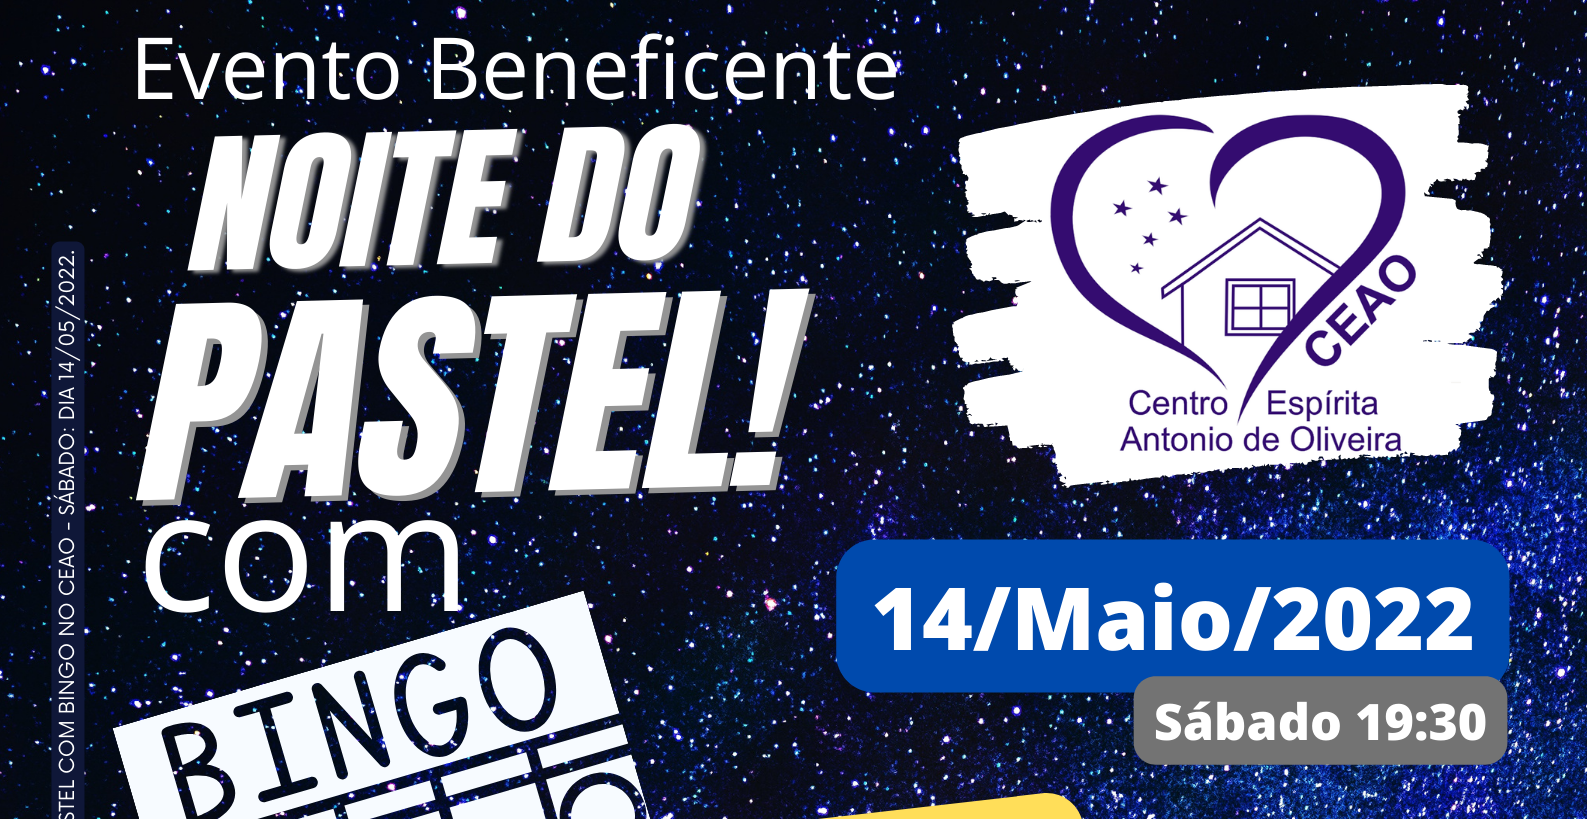 Evento Beneficente – Noite do Pastel com Bingo no CEAO – Sábado às 19:30 dia 14-Maio-2022